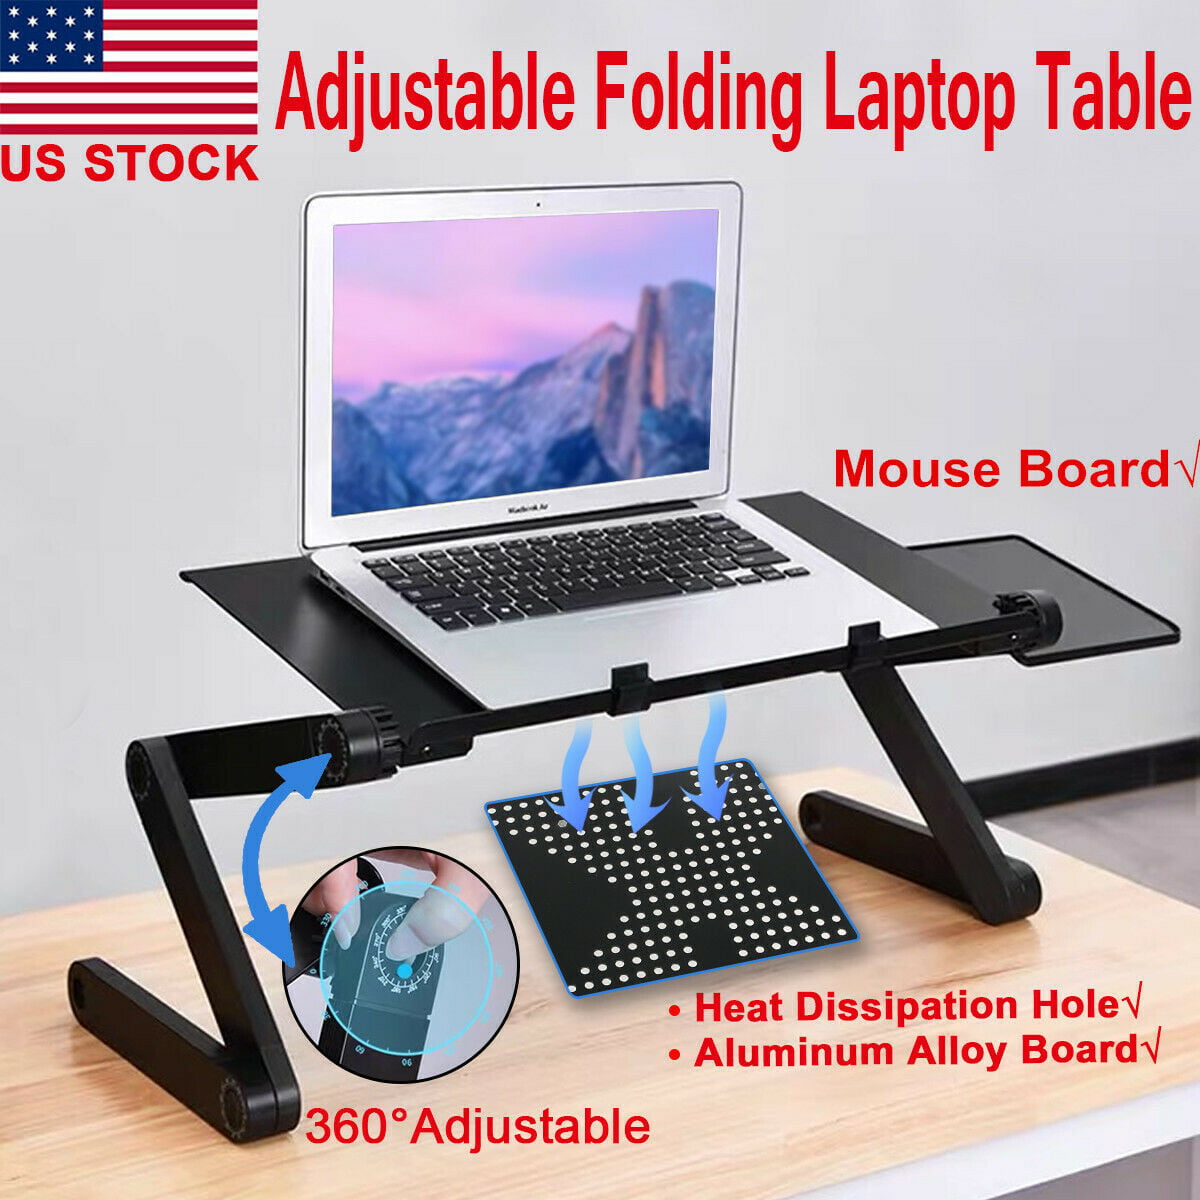 Details about   Adjustable Portable Laptop Desk Ergonomic TV Bed Lap desk Tray PC Table Aluminum 